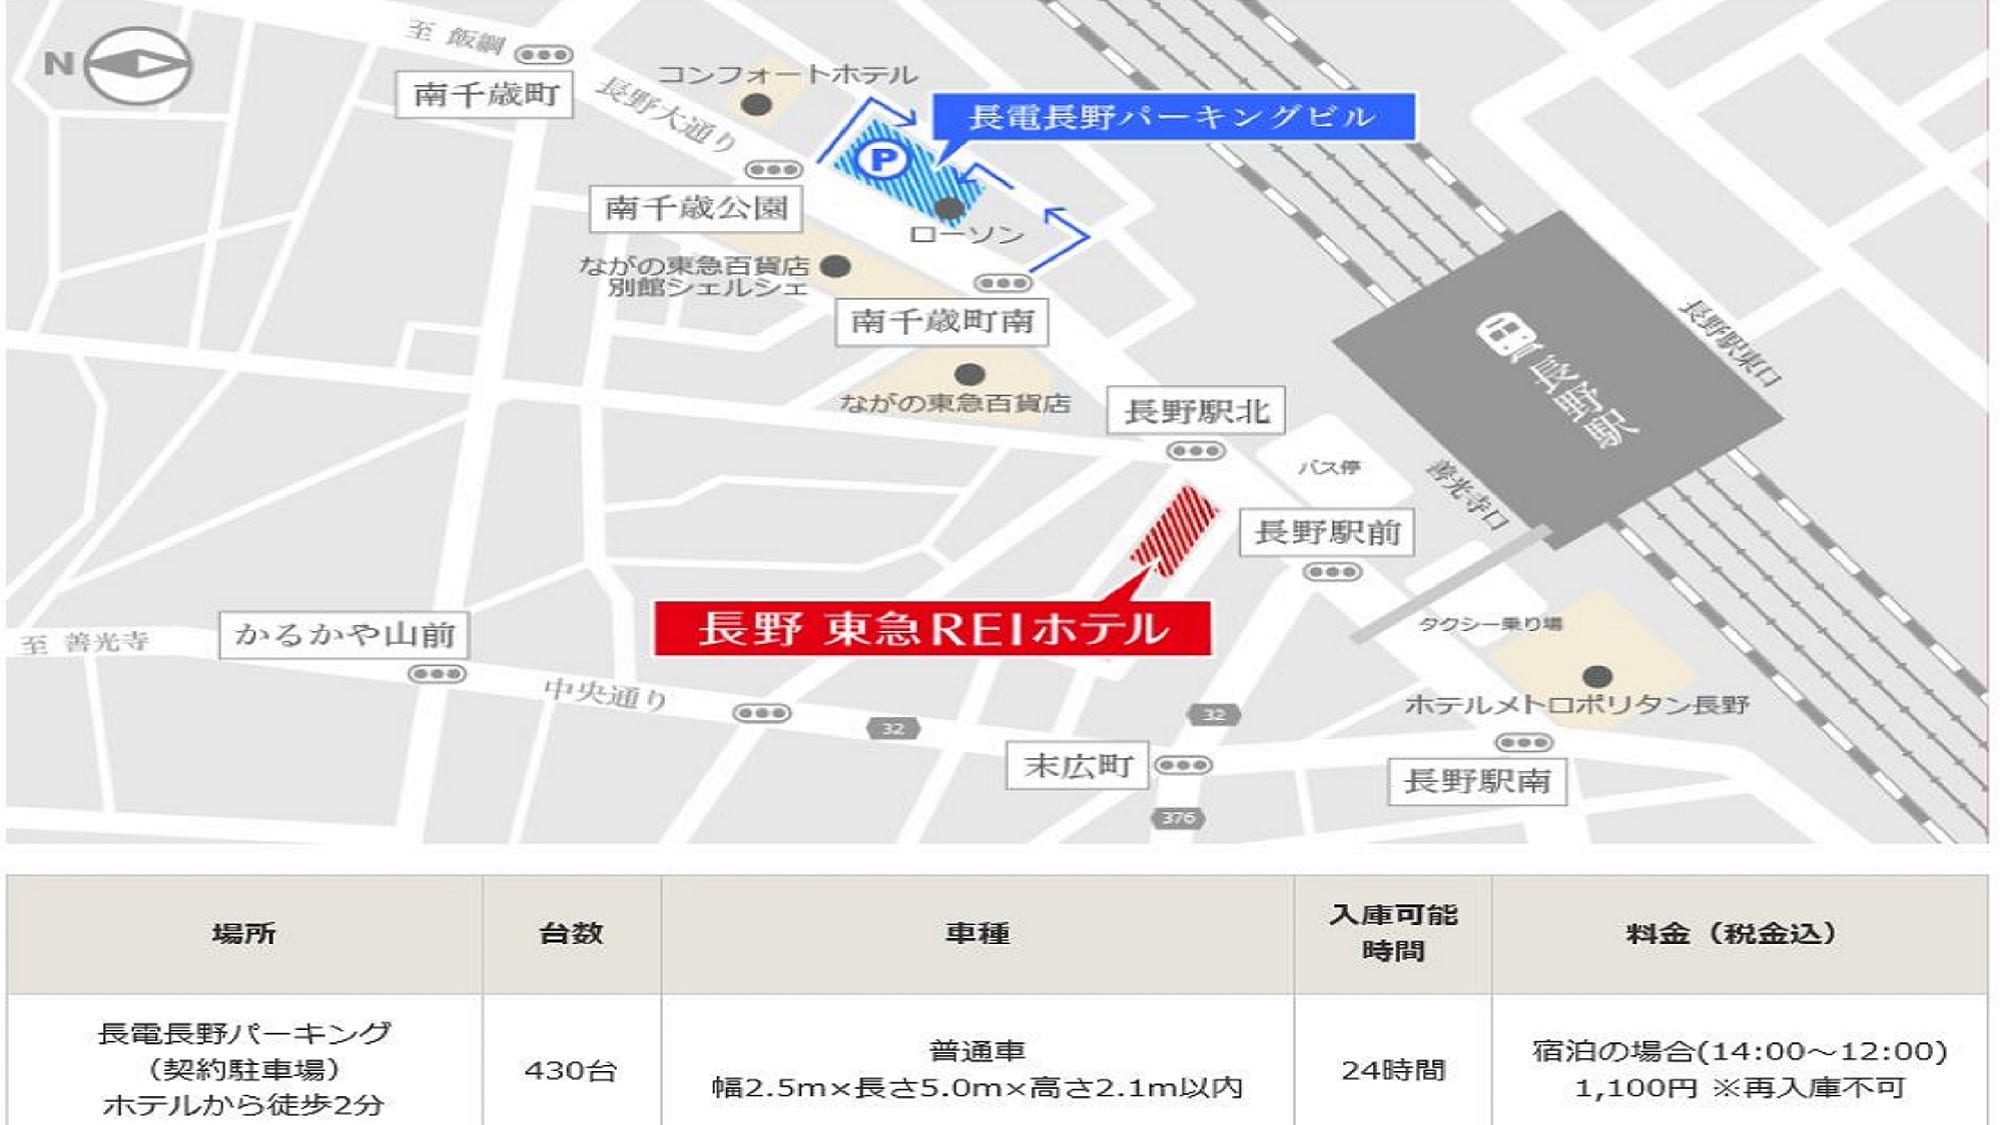 【액세스 지도】제휴 주차장 “나가덴 나가노 주차” 2023년 5월 6일 숙박분까지